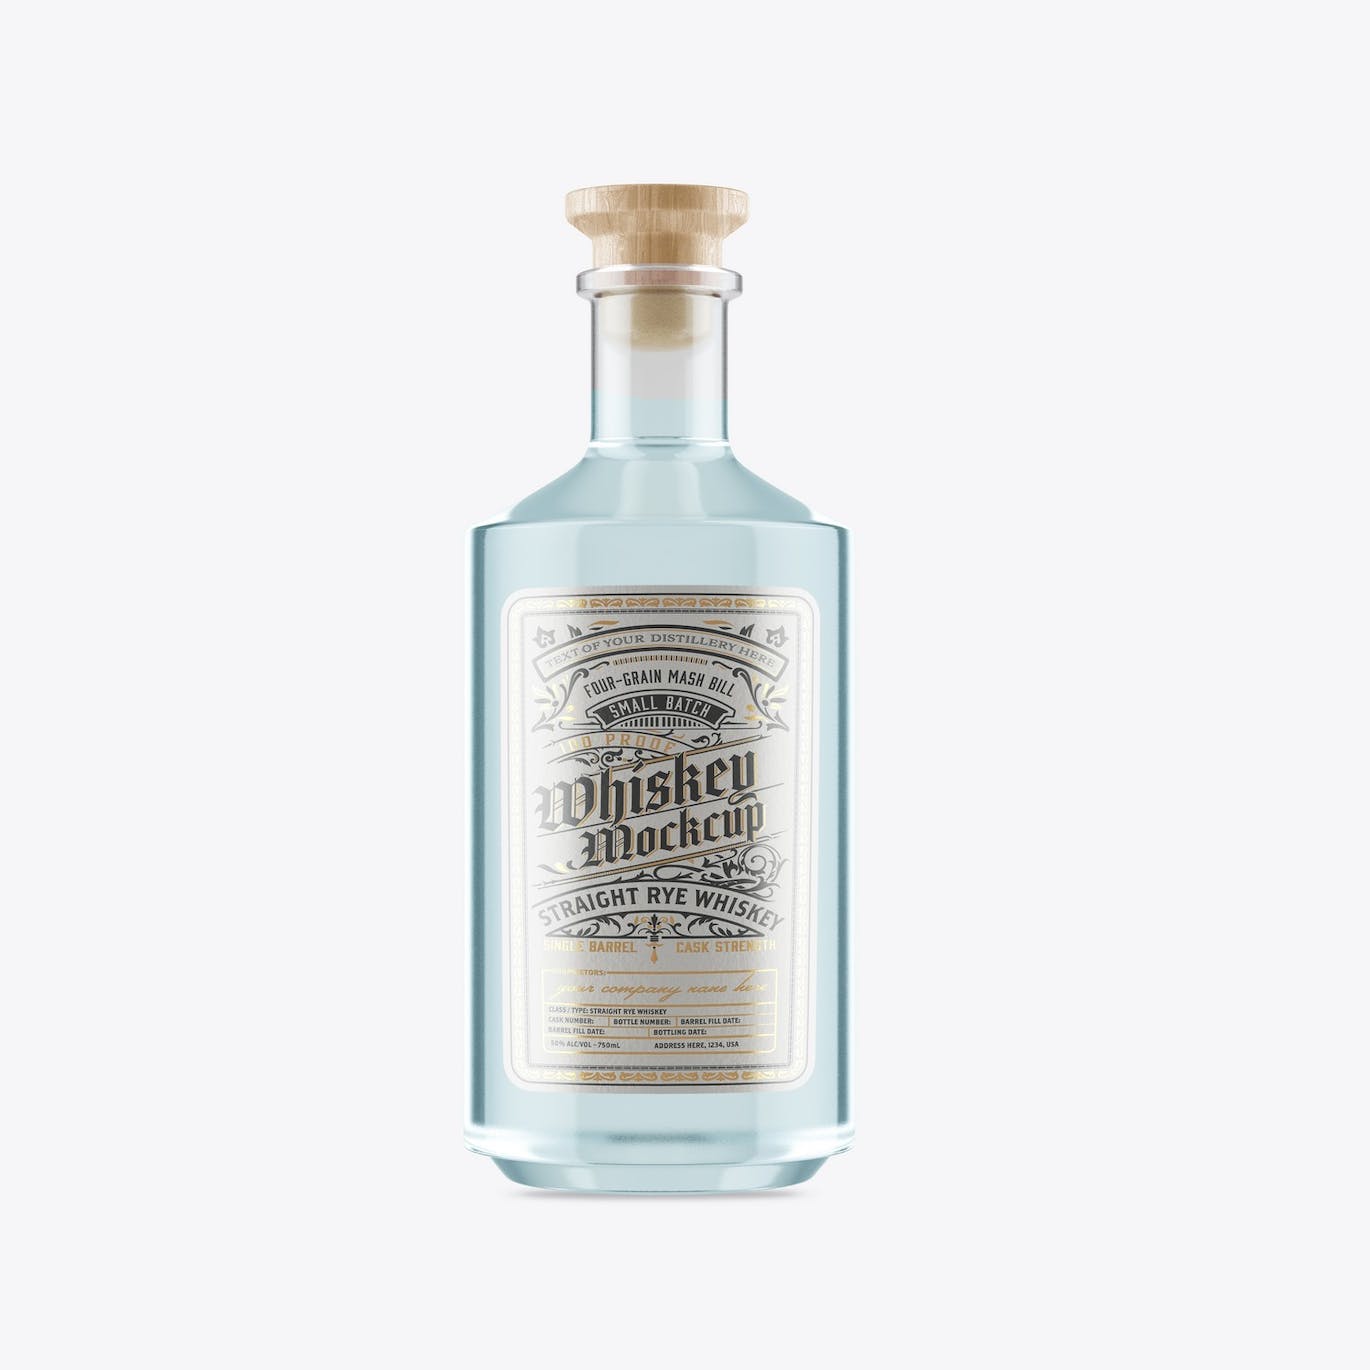 威士忌酒玻璃瓶包装设计样机 Pack Whiskey Liquor Glass Bottle Mockup 样机素材 第7张